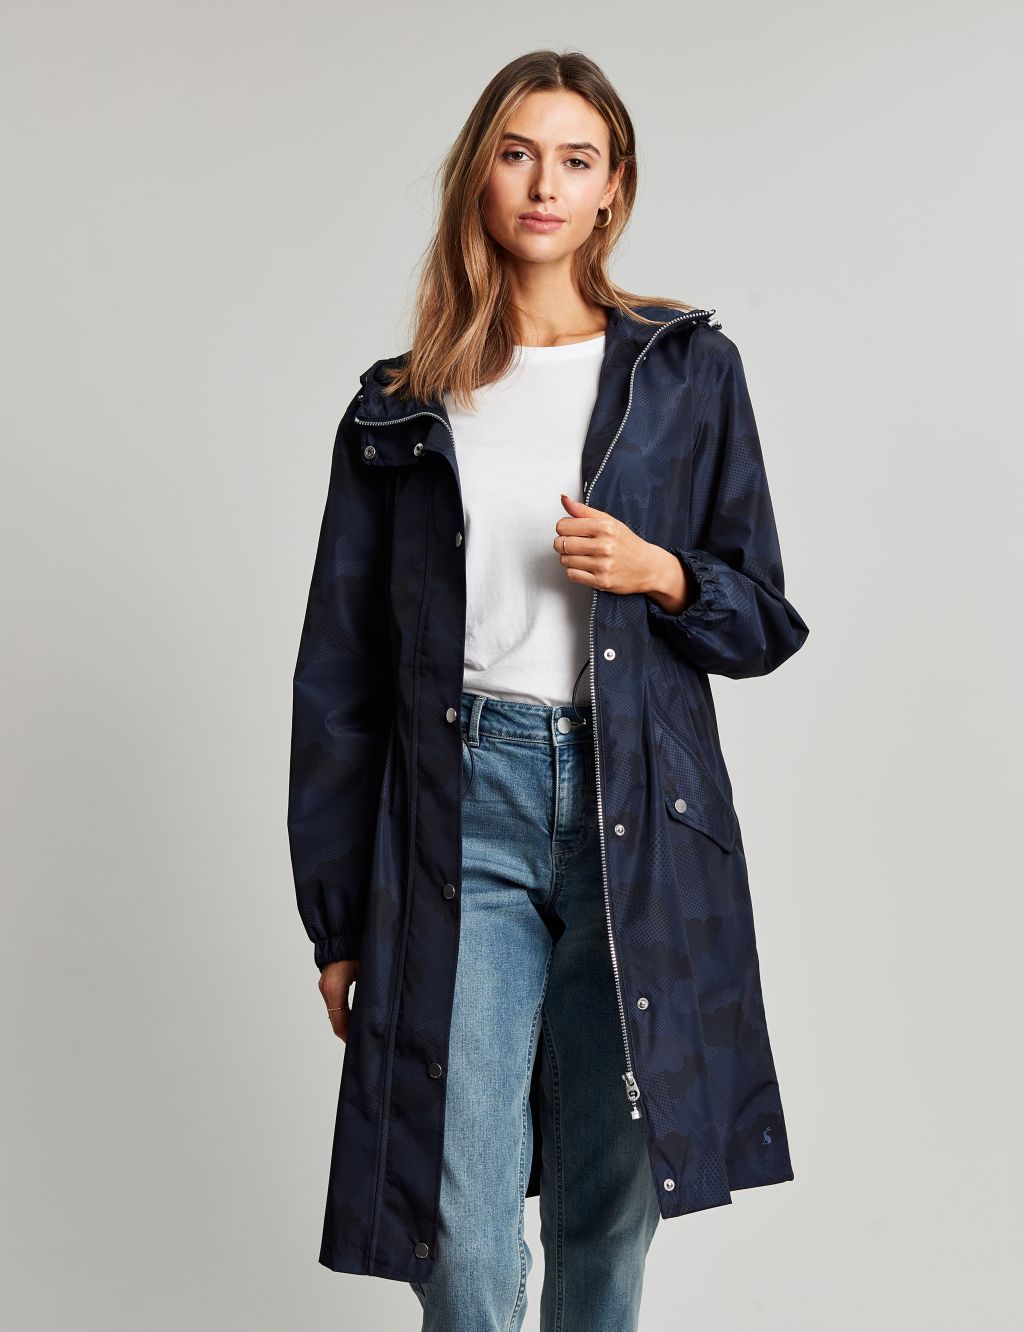 Waterproof Printed Hooded Longline Raincoat image 1